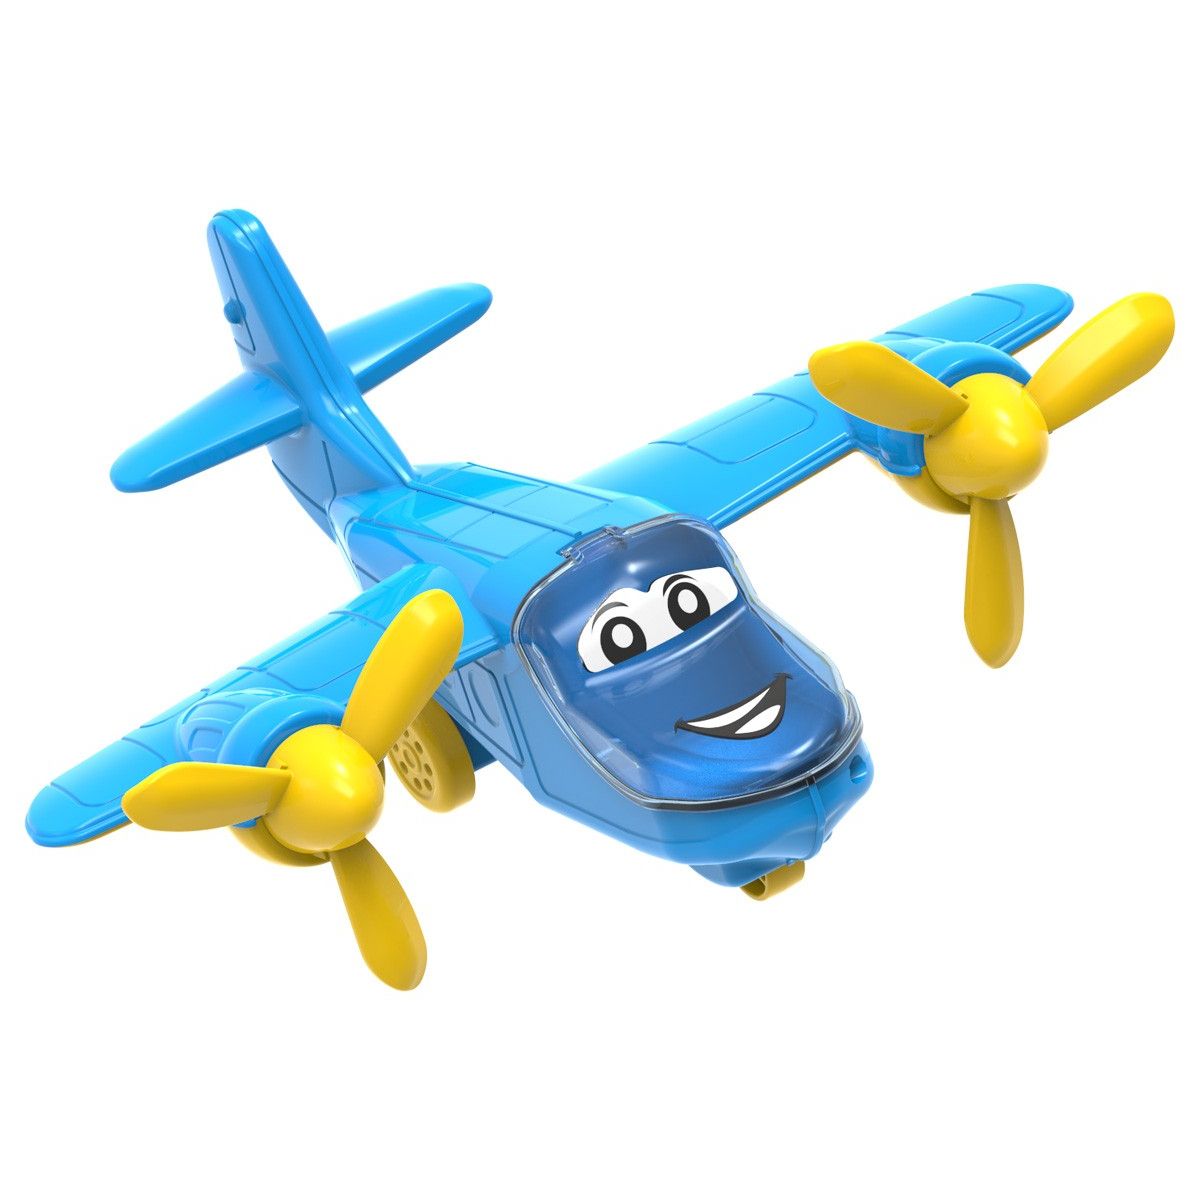 Пластиковая игрушка "Самолет" (голубой)